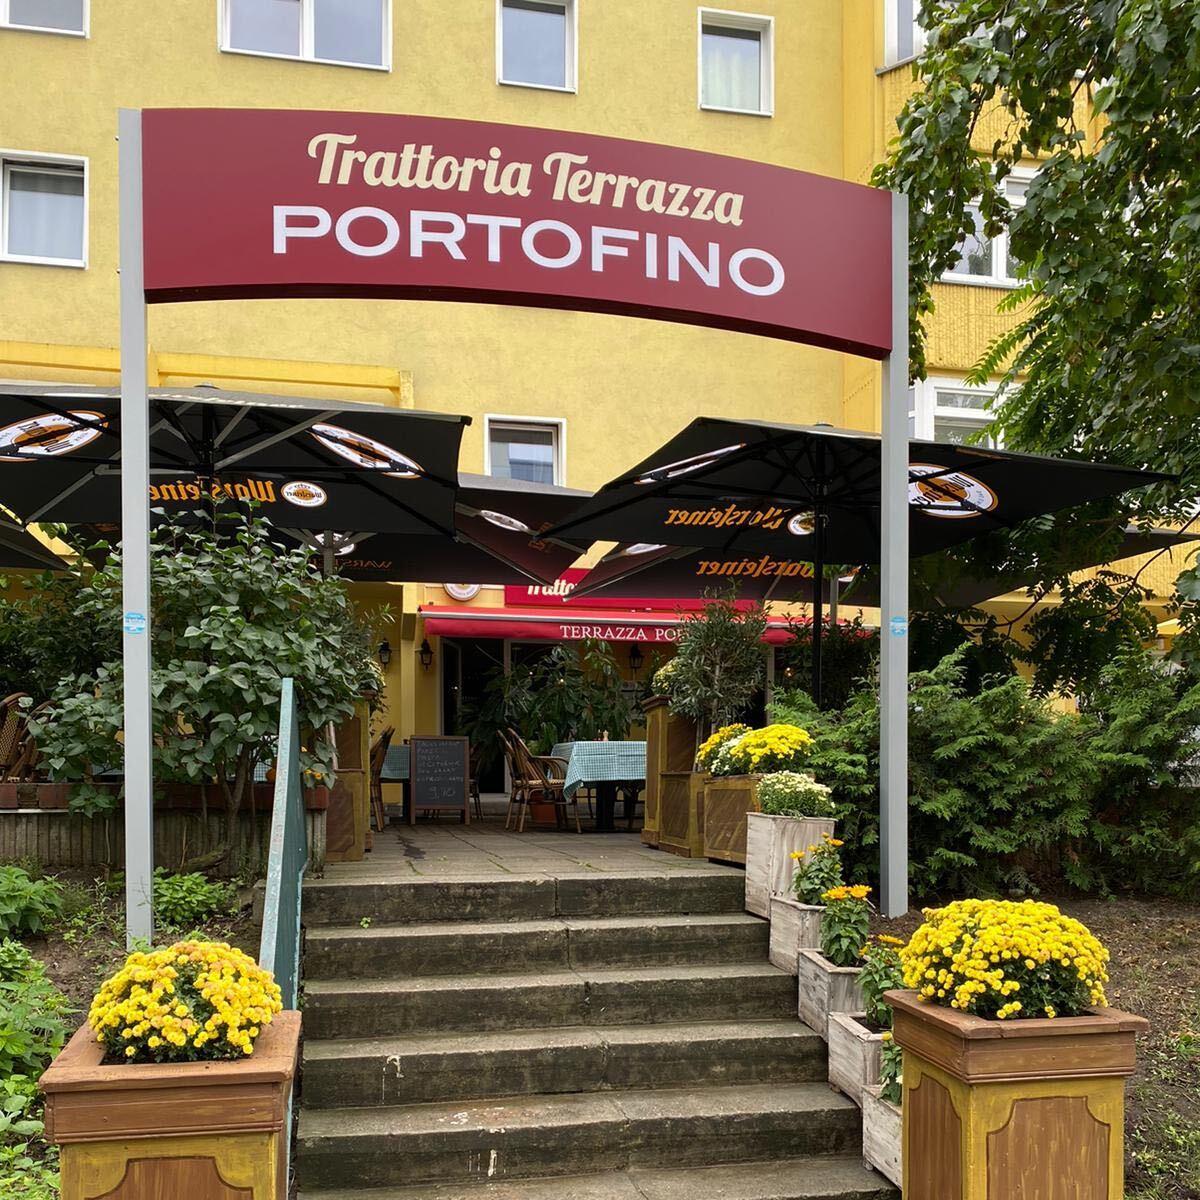 Restaurant "Terrazza Portofino" in Berlin